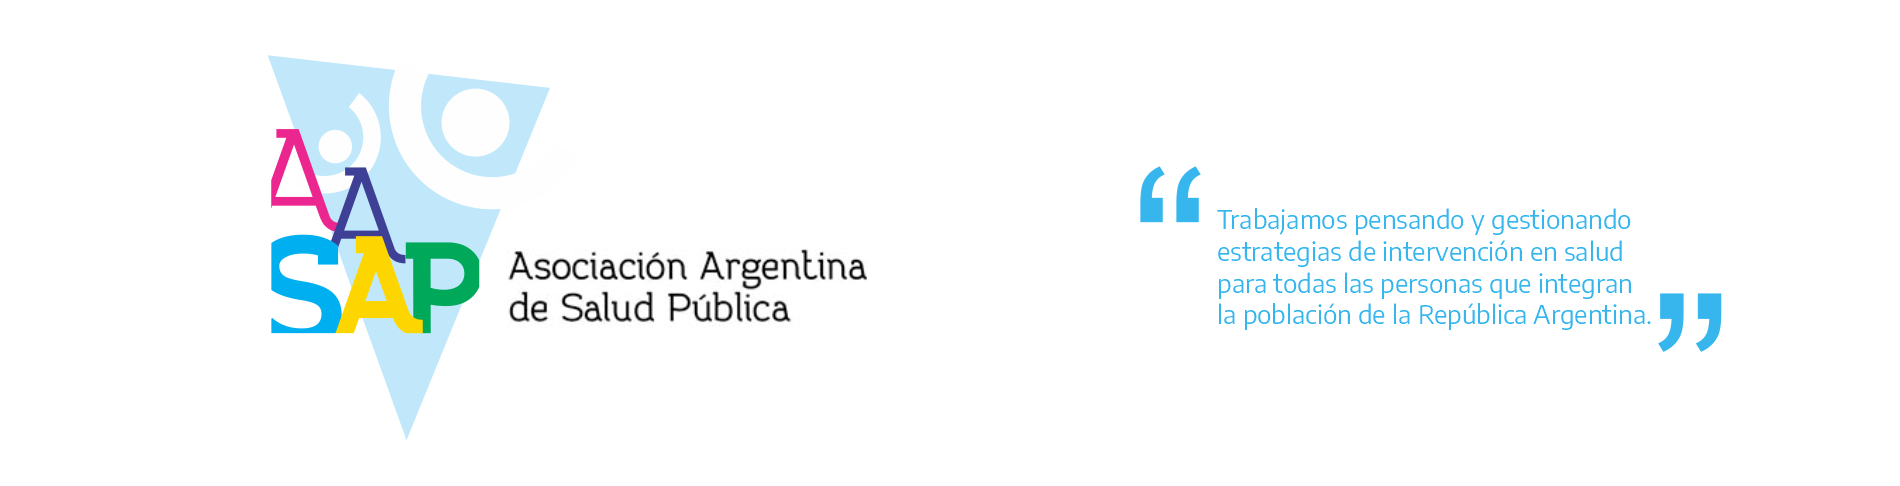 Asociación Argentina de Salud Pública